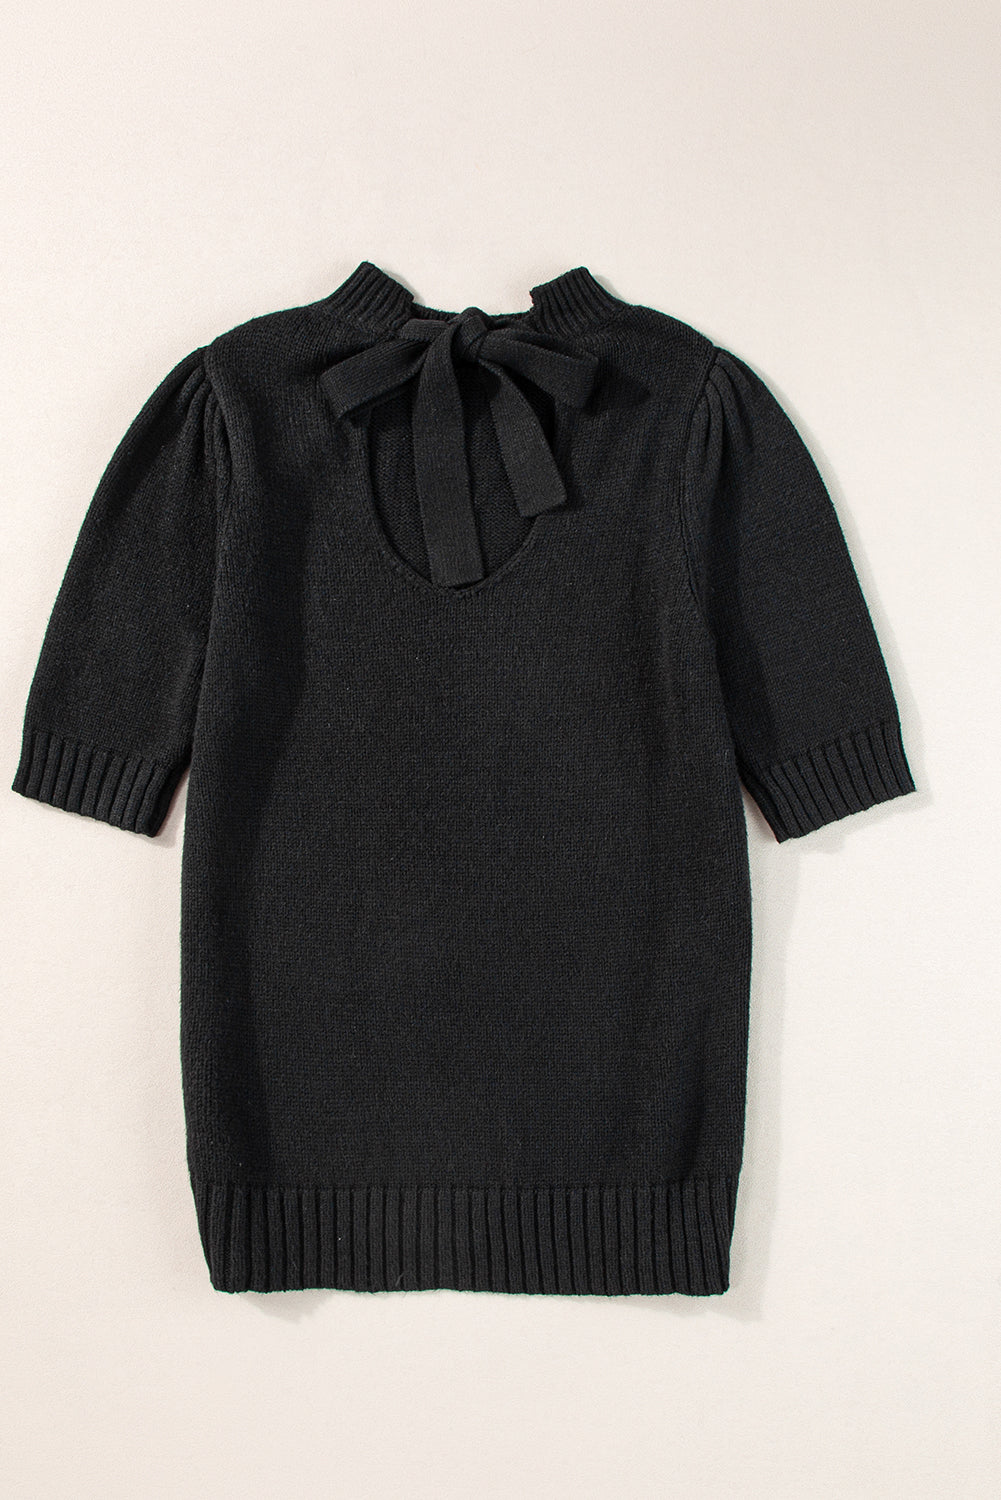 Black Knotted Keyhole Nape Short Sleeve Knit Sweater